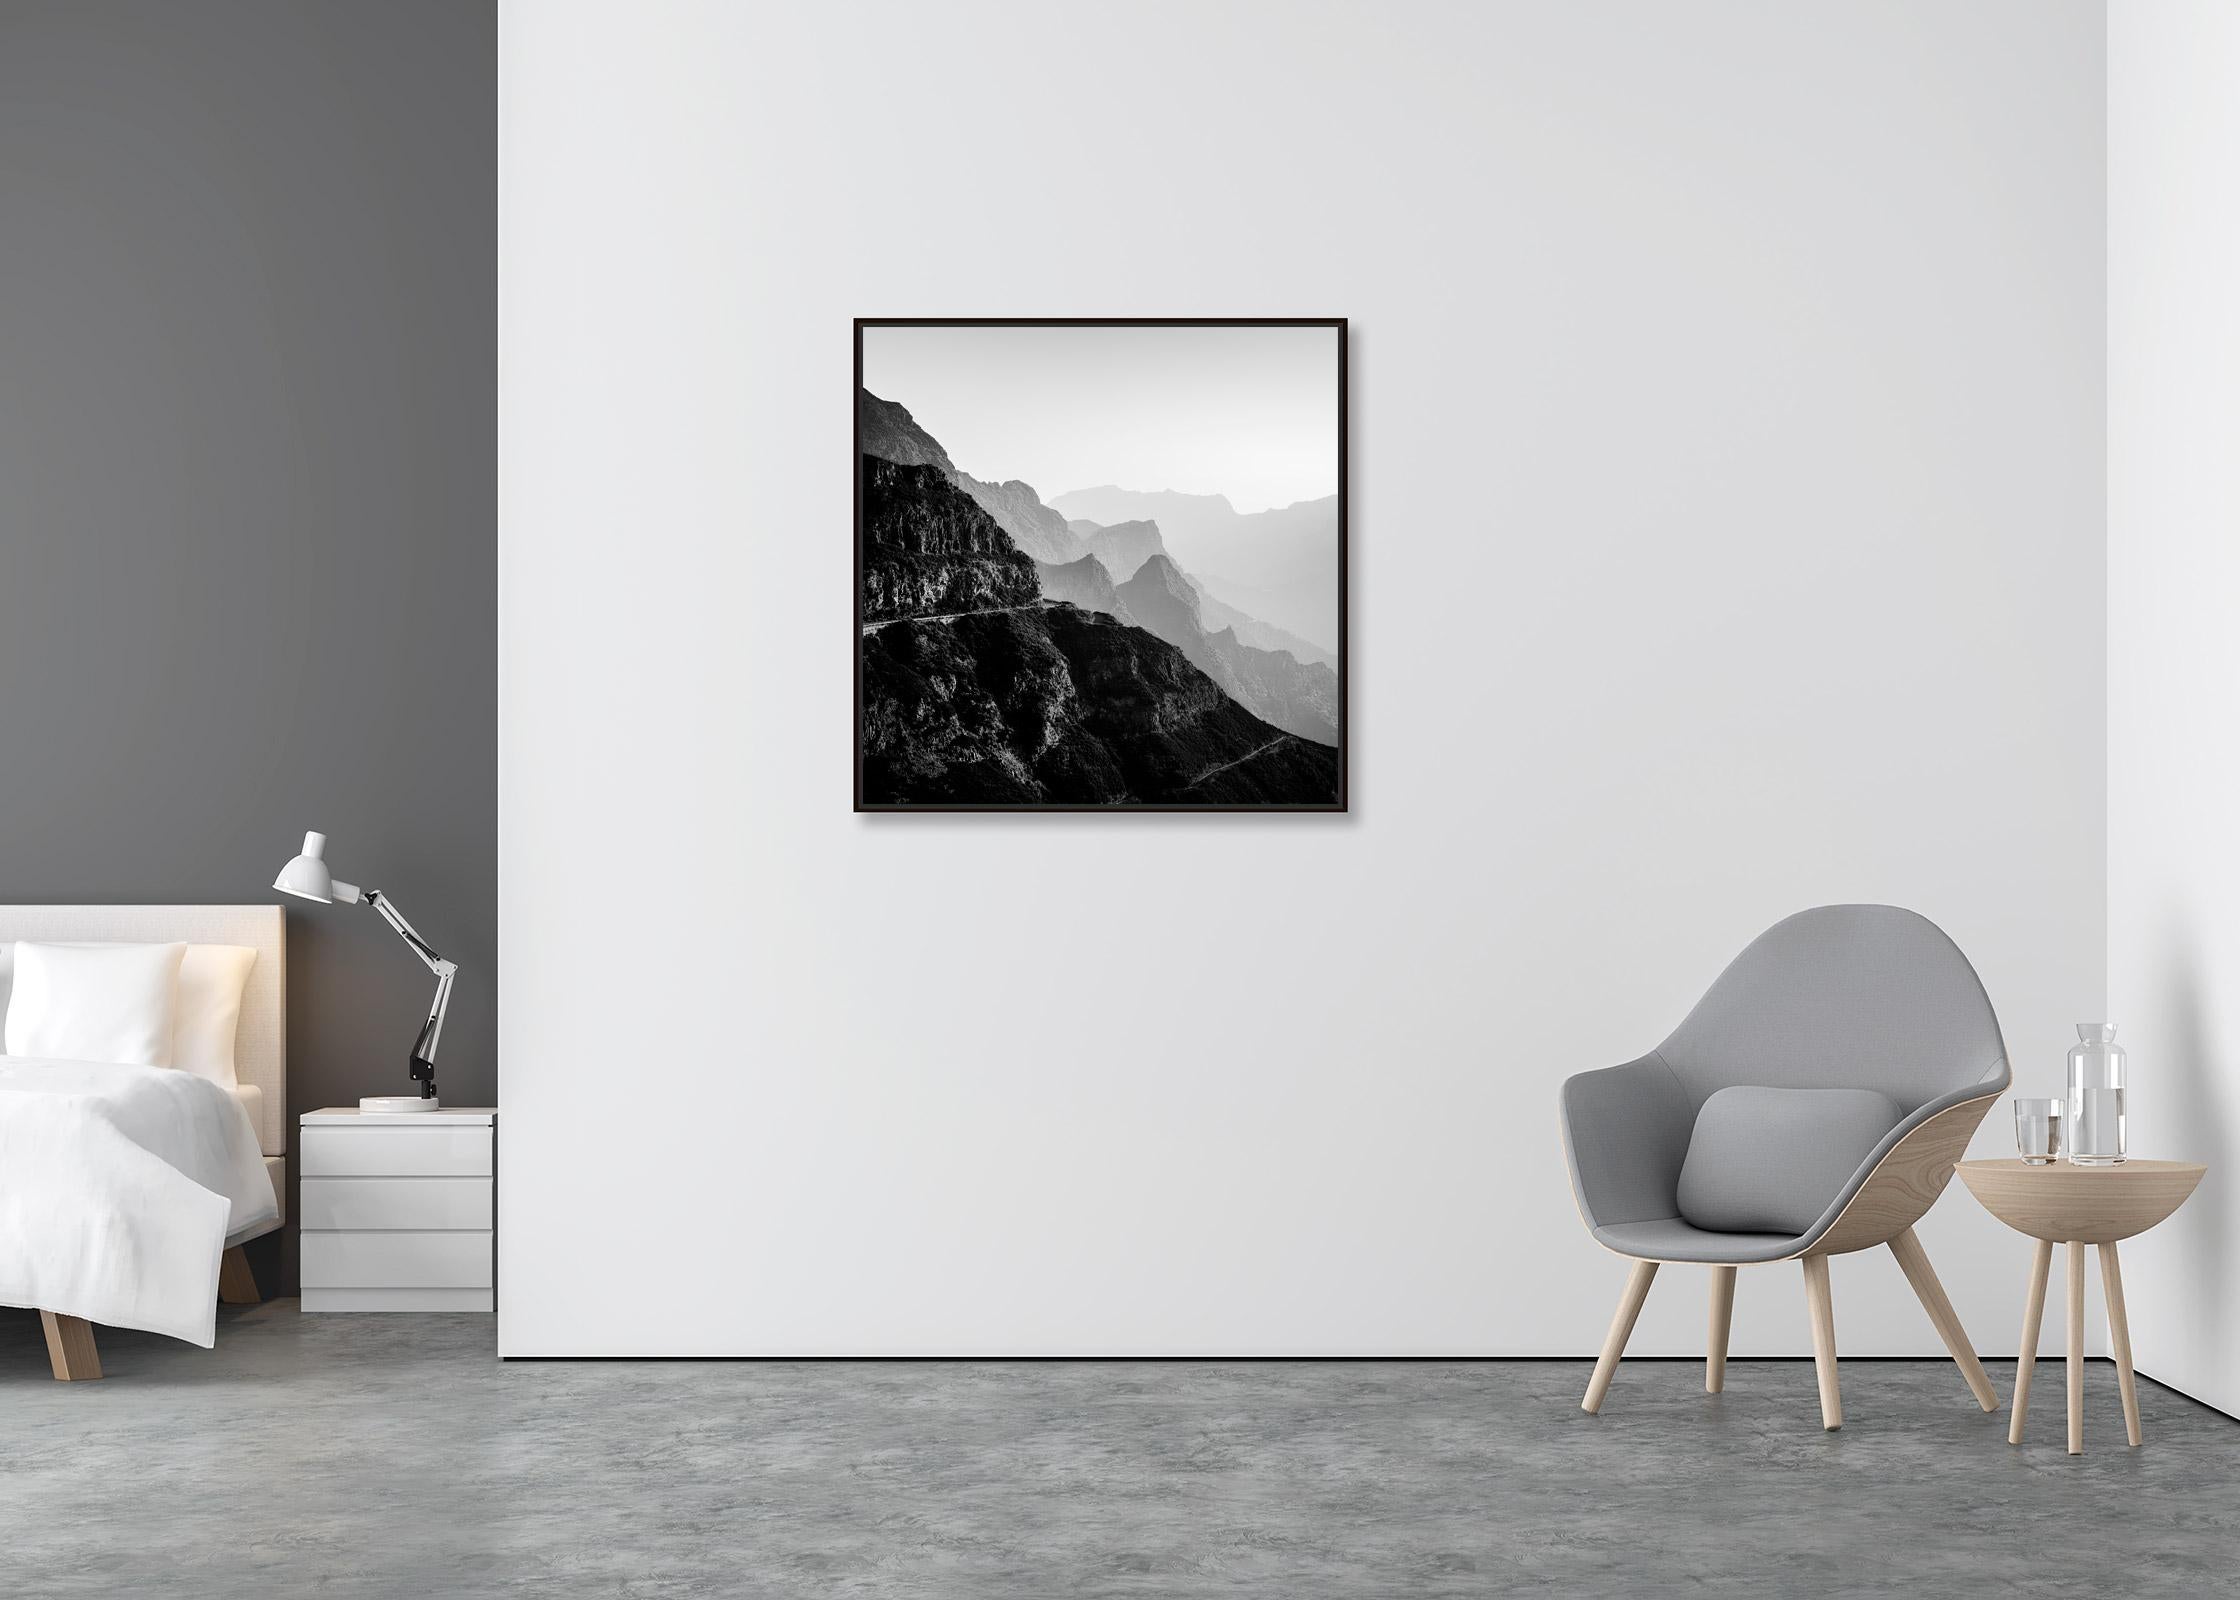 Madeira Peaks, Morgenlicht, Fanal, Portugal, Schwarz-Weiß-Landschaftsfotografie (Minimalistisch), Photograph, von Gerald Berghammer